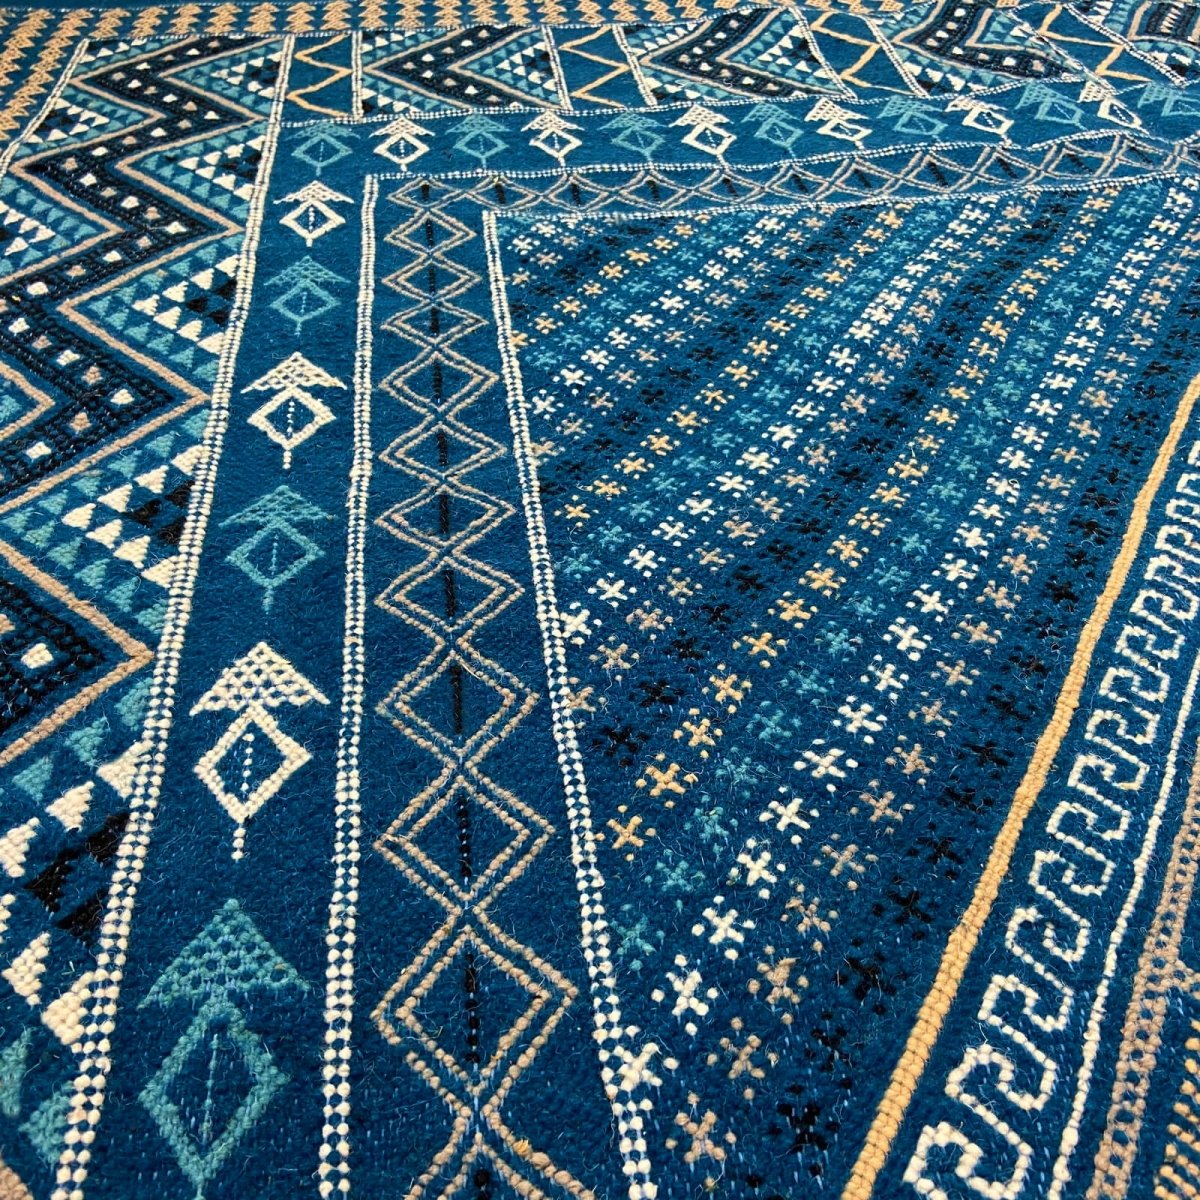 Berber tapijt Vloerkleed Margoum Syphax 200x300 cm Blauw/Wit (Handgeweven, Wol, Tunesië) Tunesisch Margoum Vloerkleed uit de sta